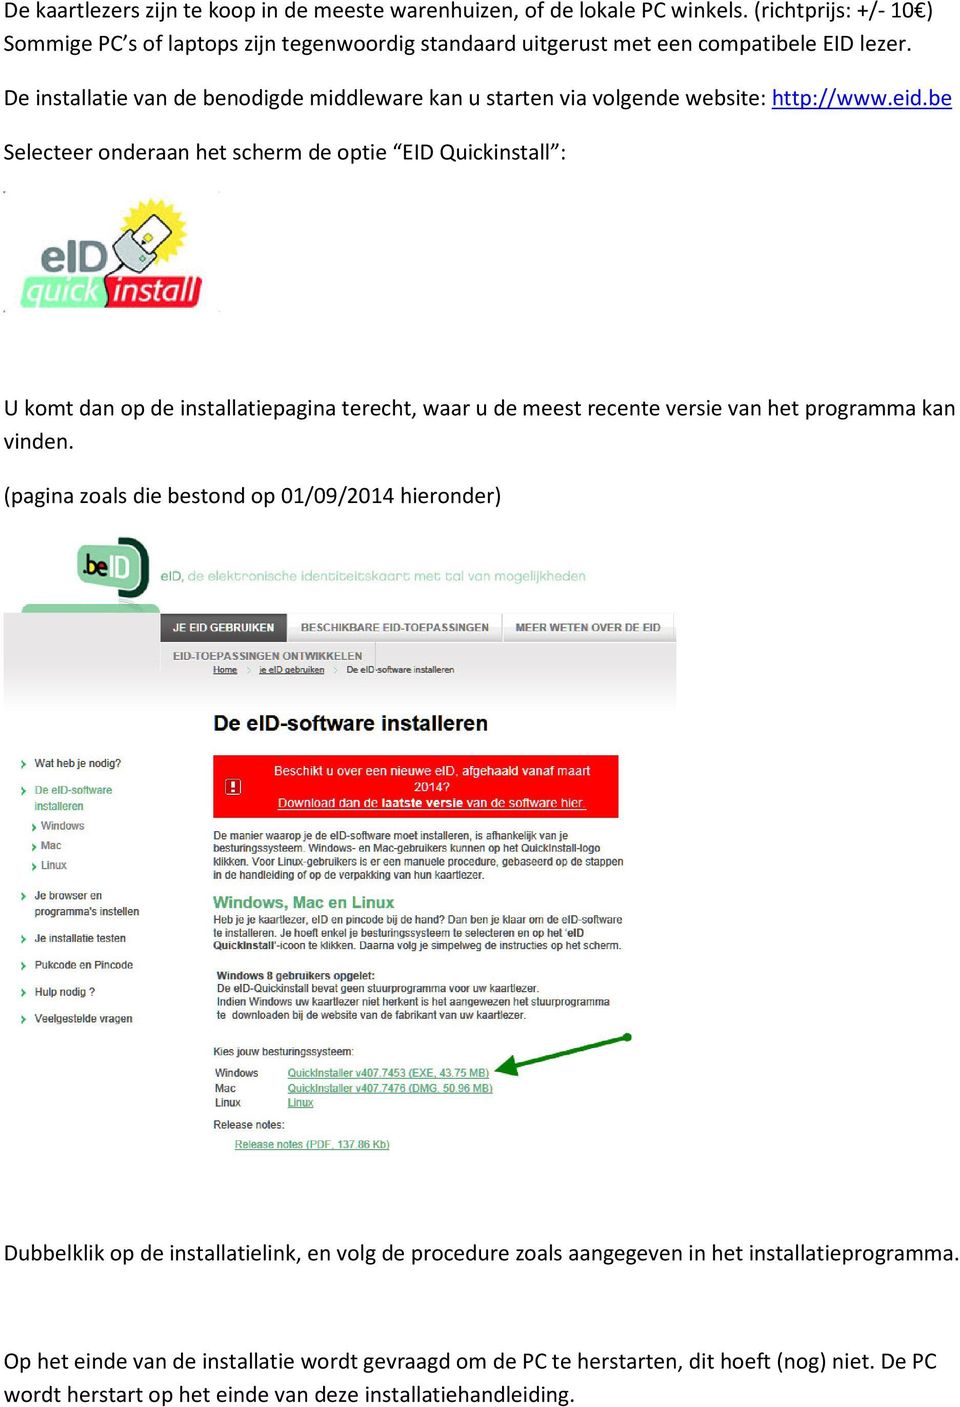 De installatie van de benodigde middleware kan u starten via volgende website: http://www.eid.